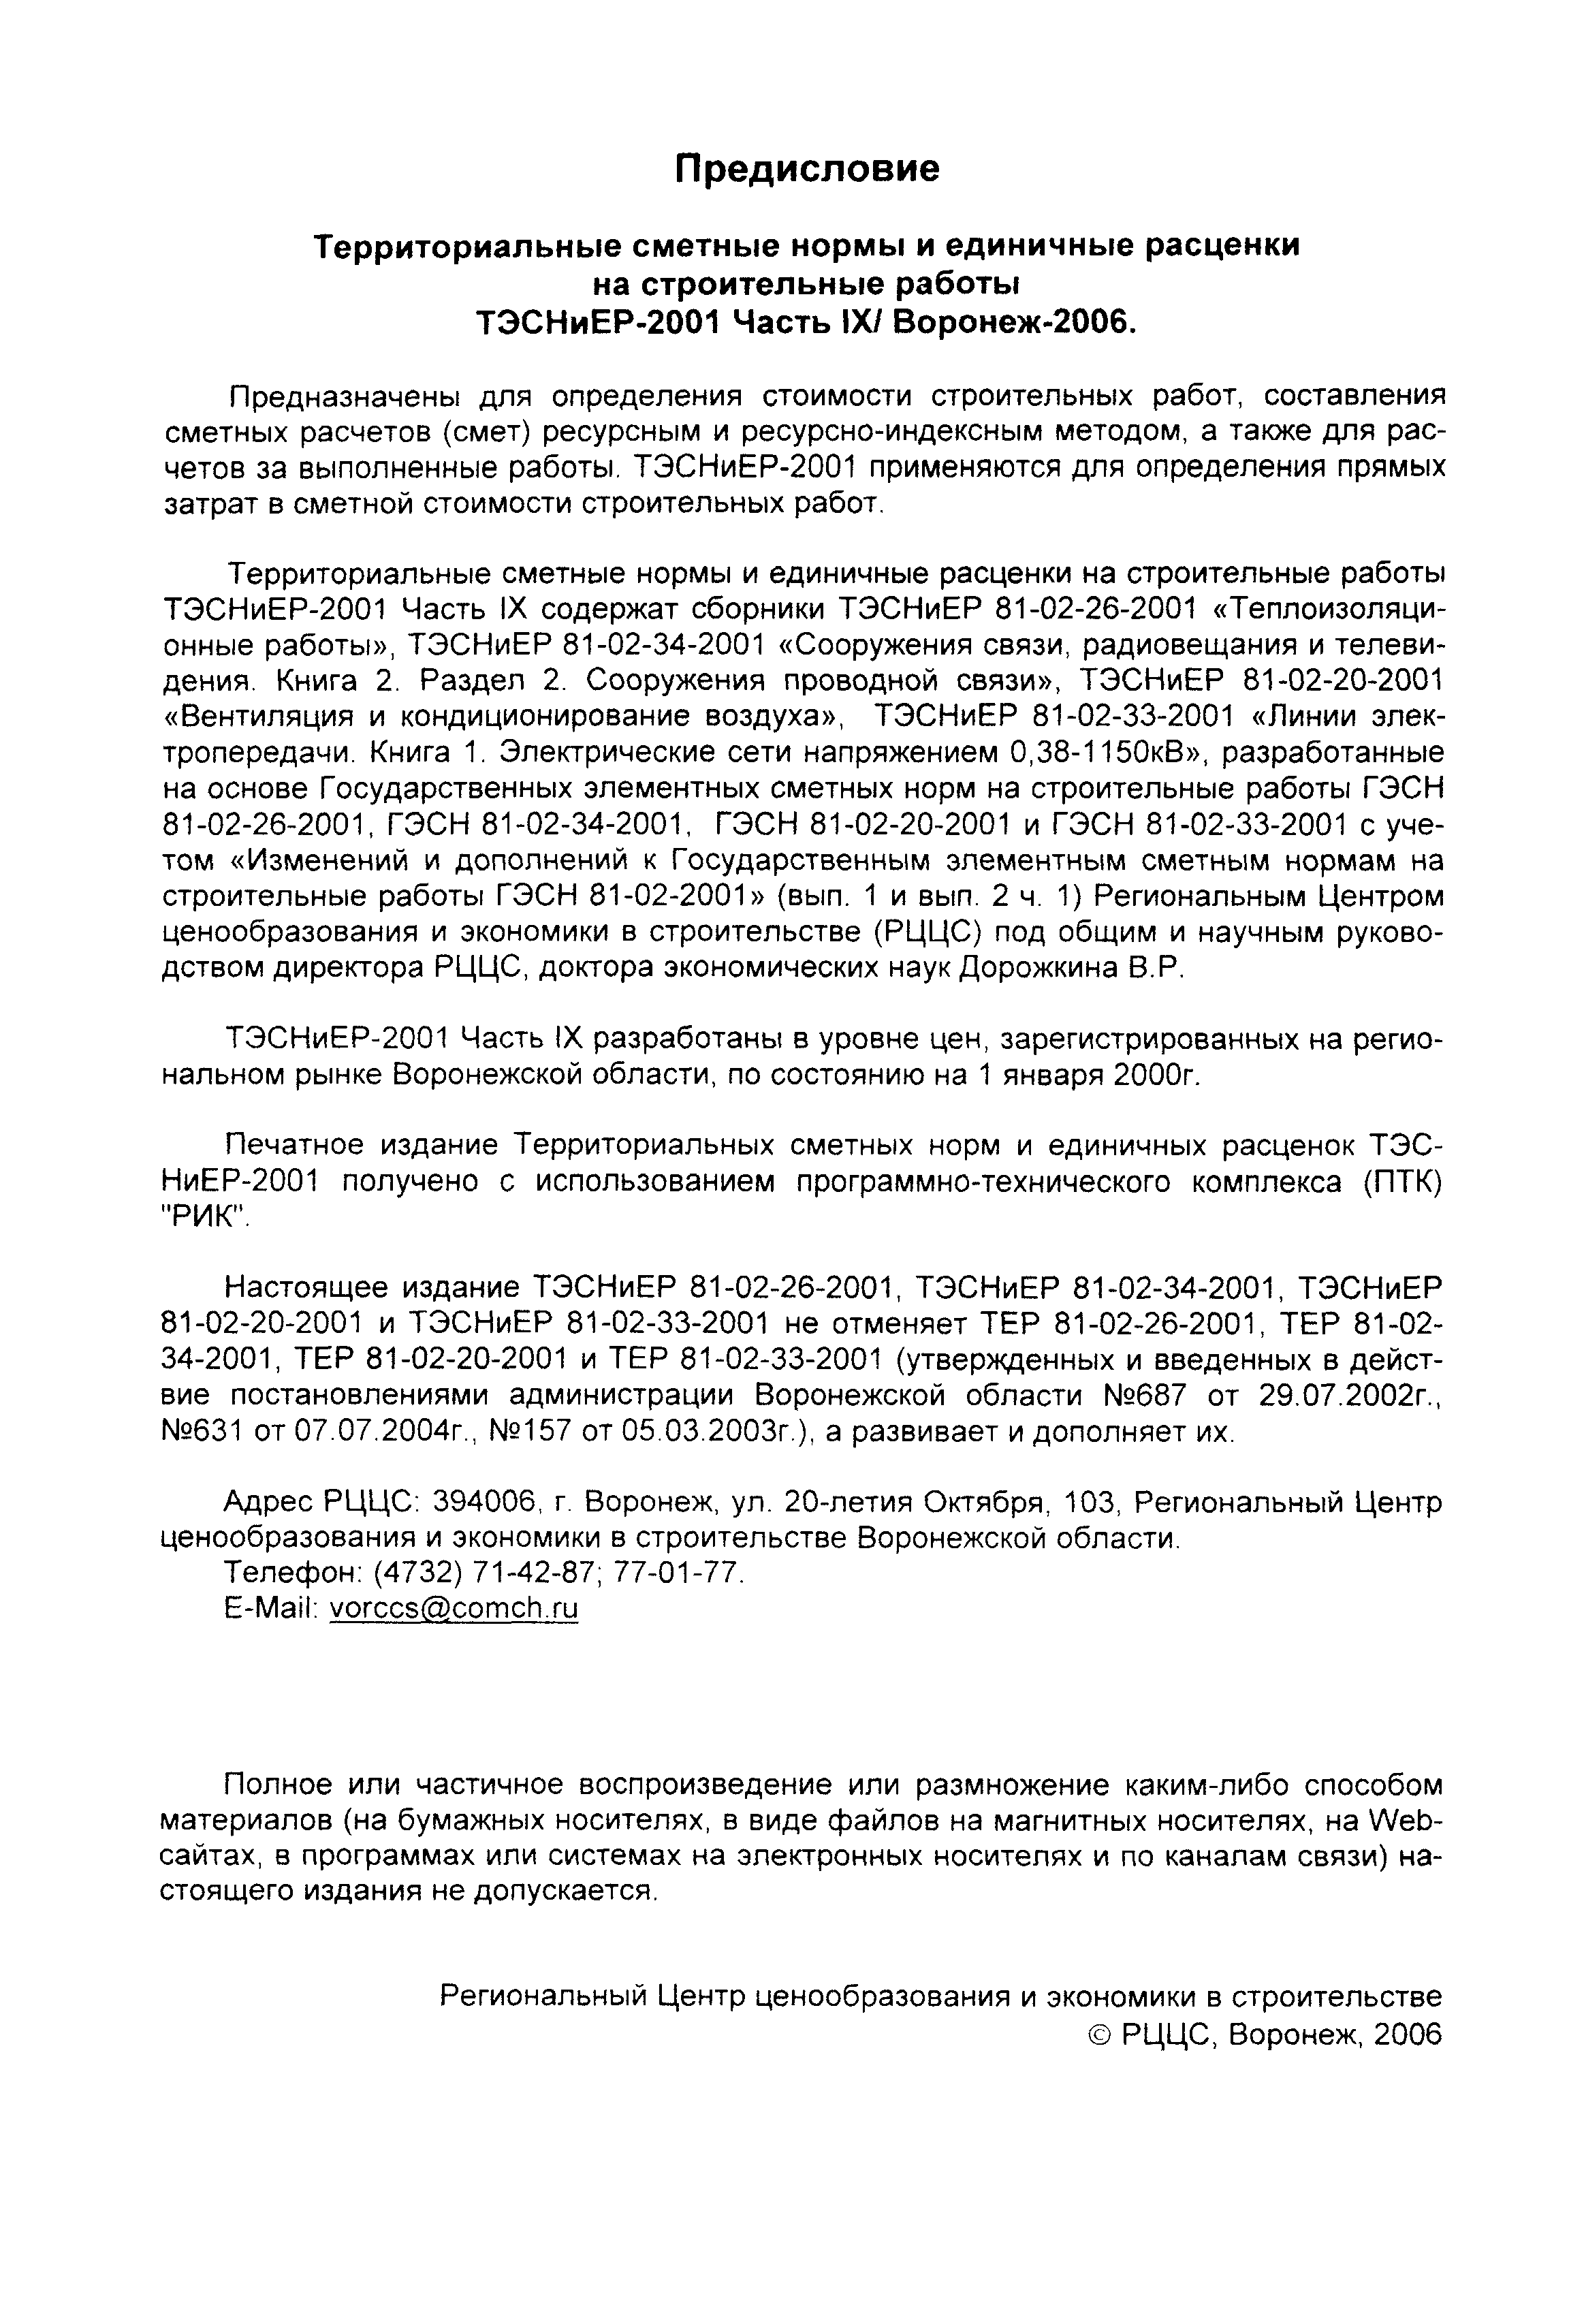 ТЭСНиЕР Воронежской области 81-02-26-2001